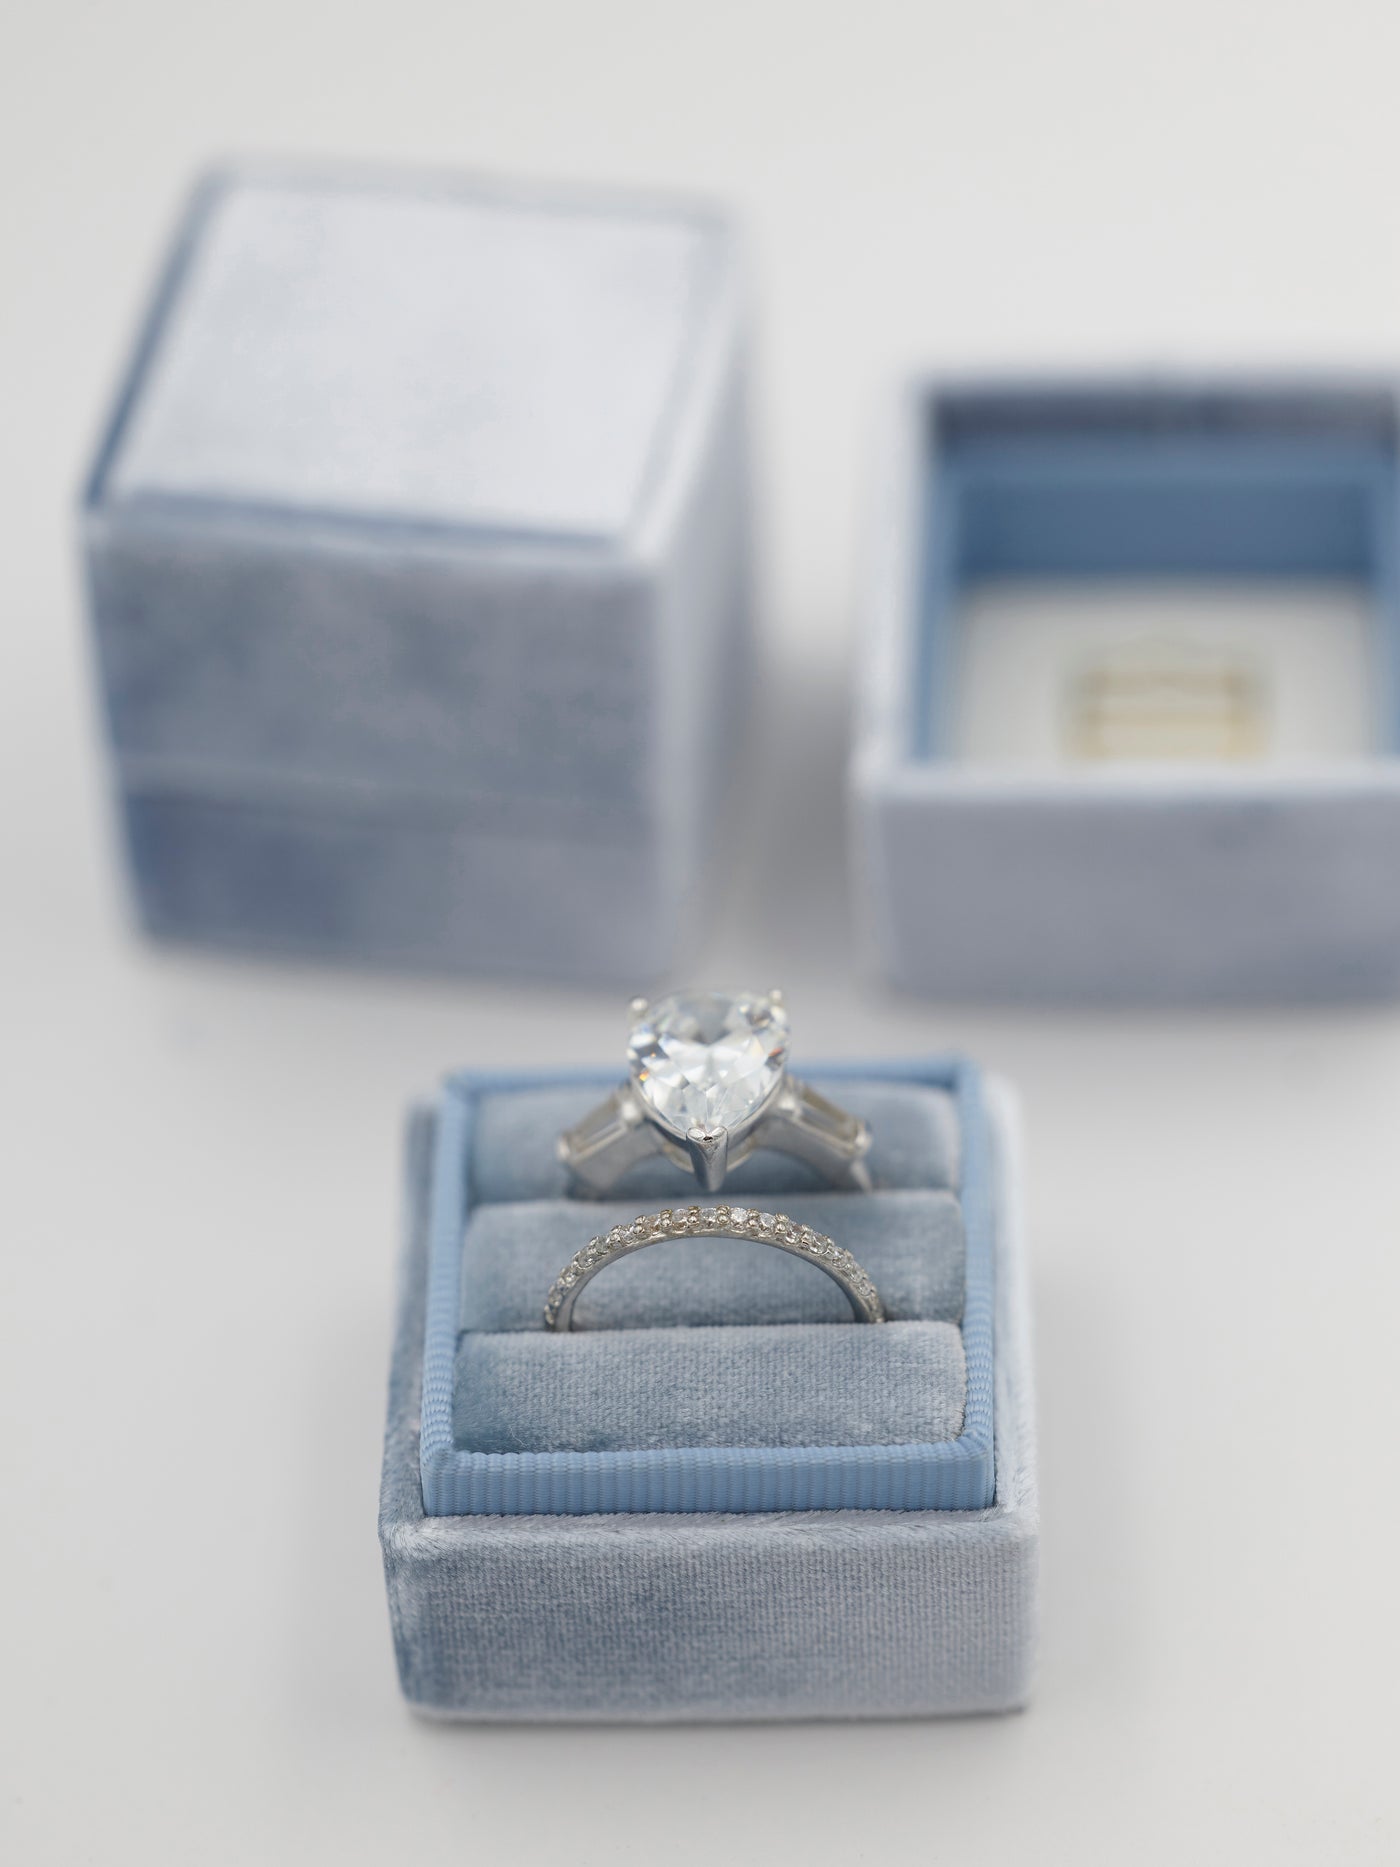 true blue velvet wedding ring box